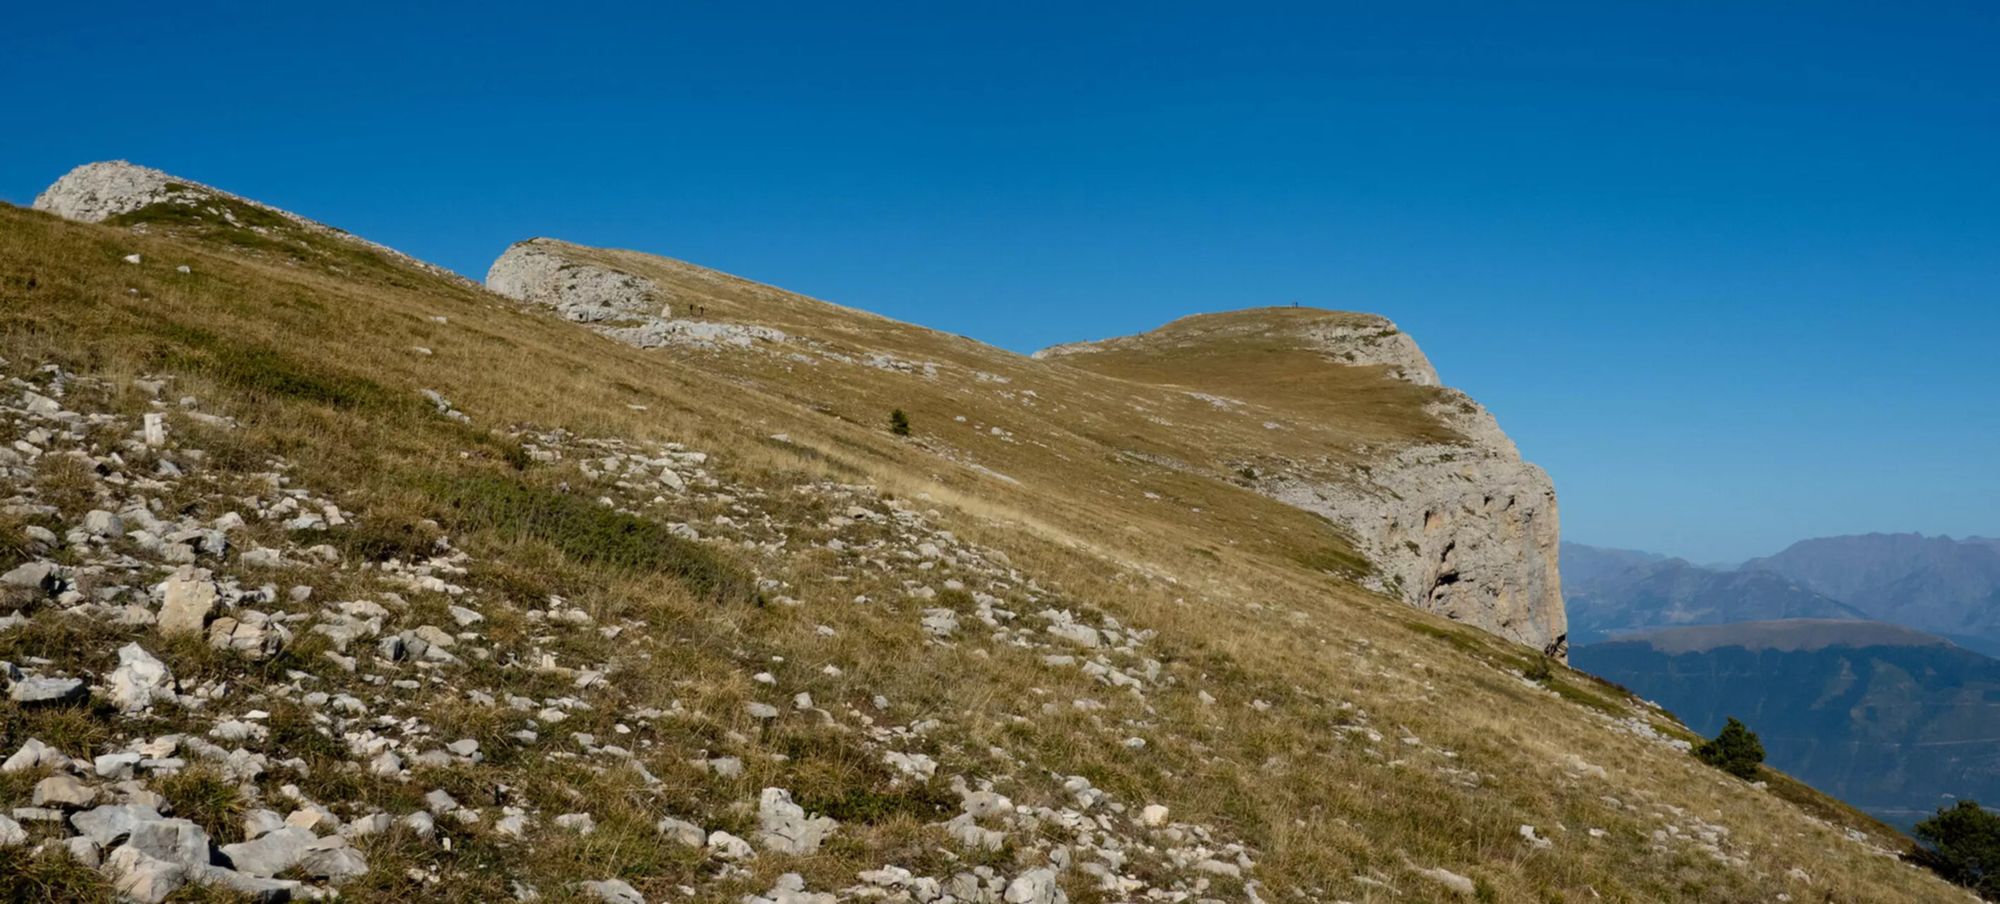 Plateau sommital du Mont Aiguille en automne